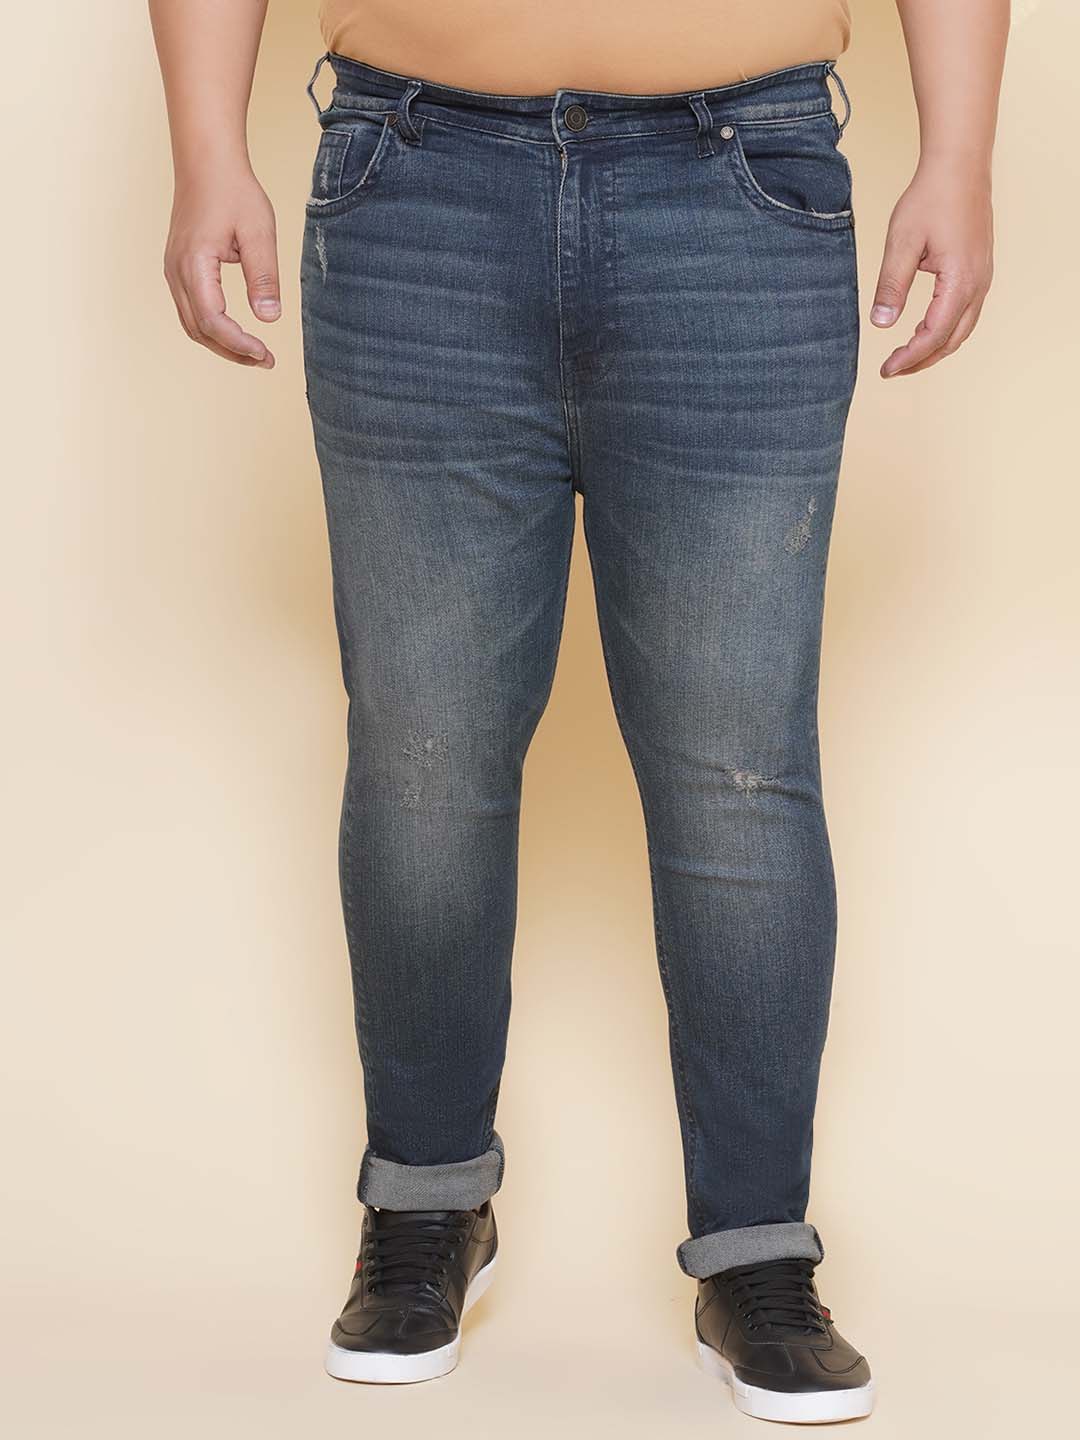 bottomwear/jeans/JPJ12421/jpj12421-1.jpg